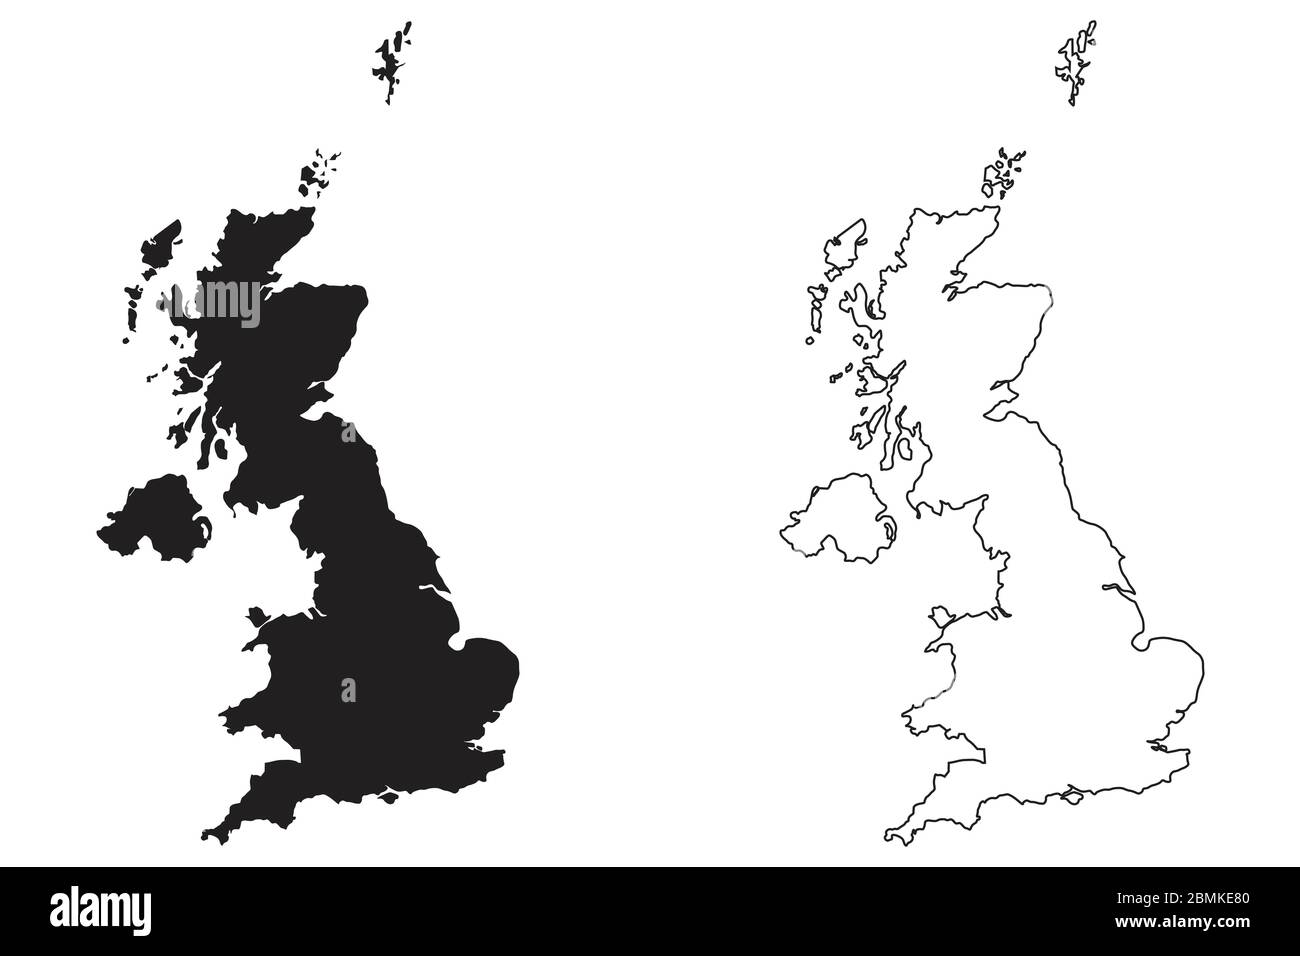 Großbritannien Großbritannien Länderkarte. Schwarze Silhouette und Umriss isoliert auf weißem Hintergrund. EPS-Vektor Stock Vektor